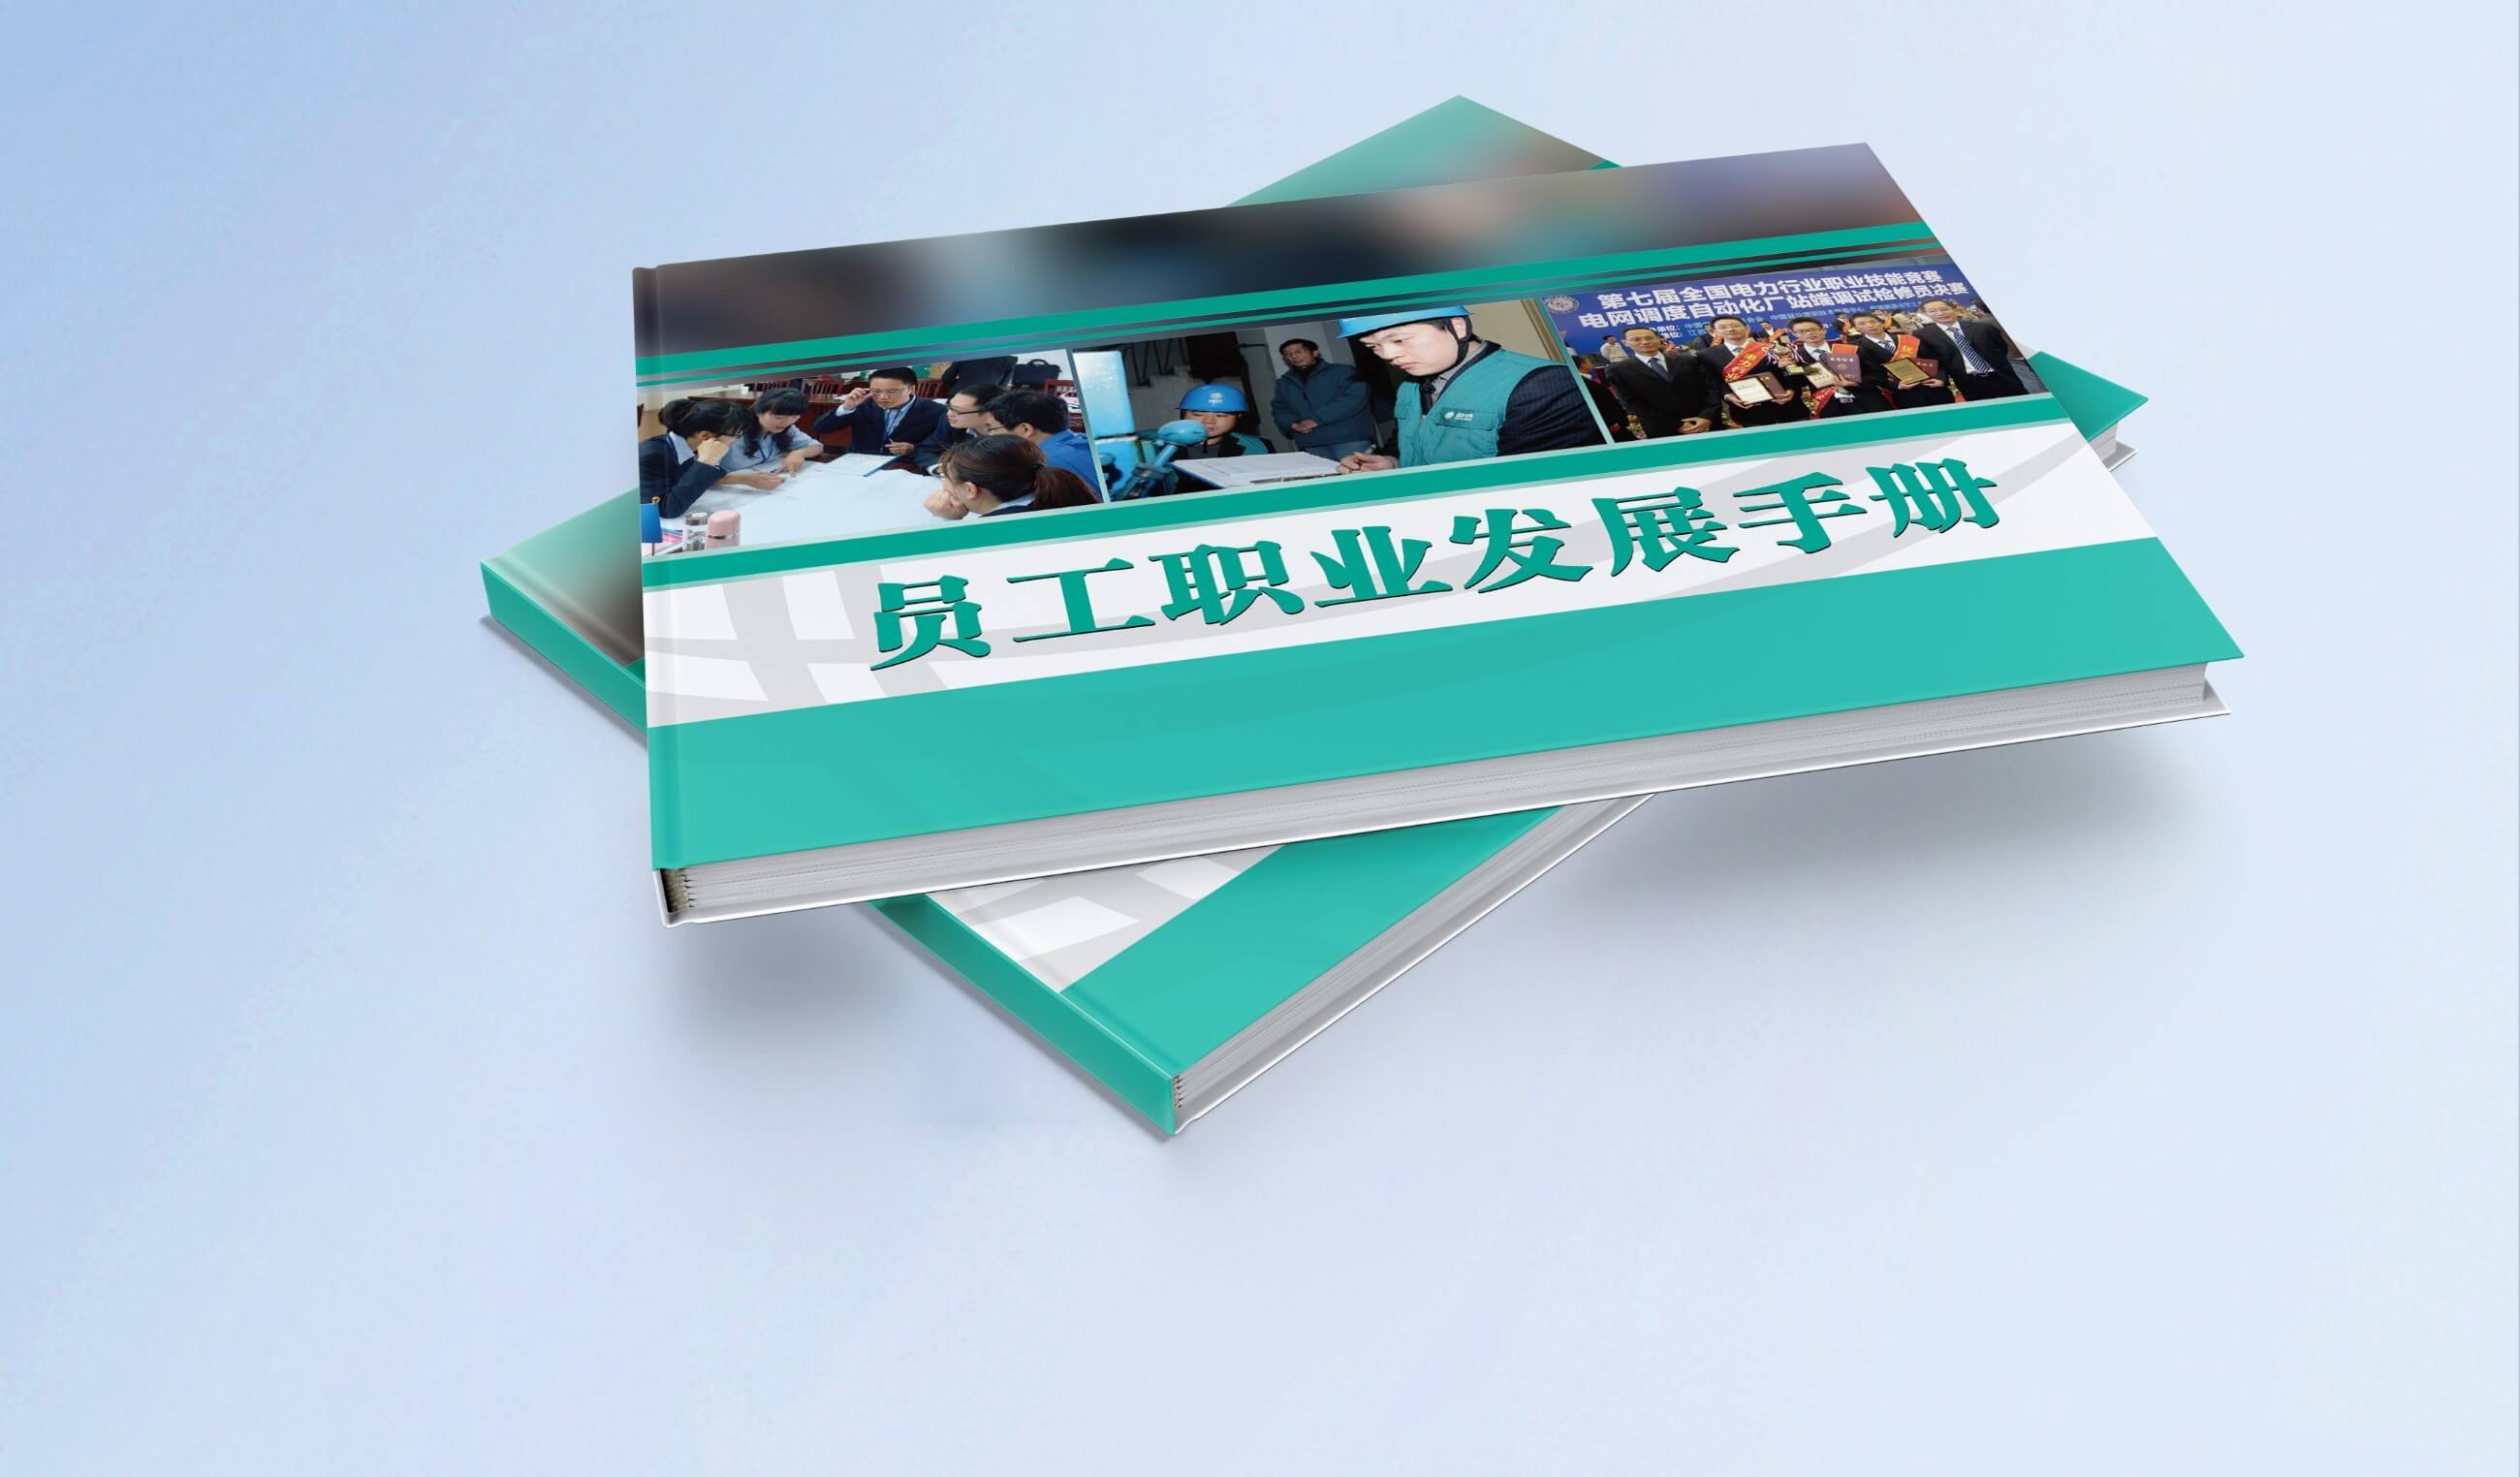 国网浙江省电力公司《员工职业发展手册》开发项目